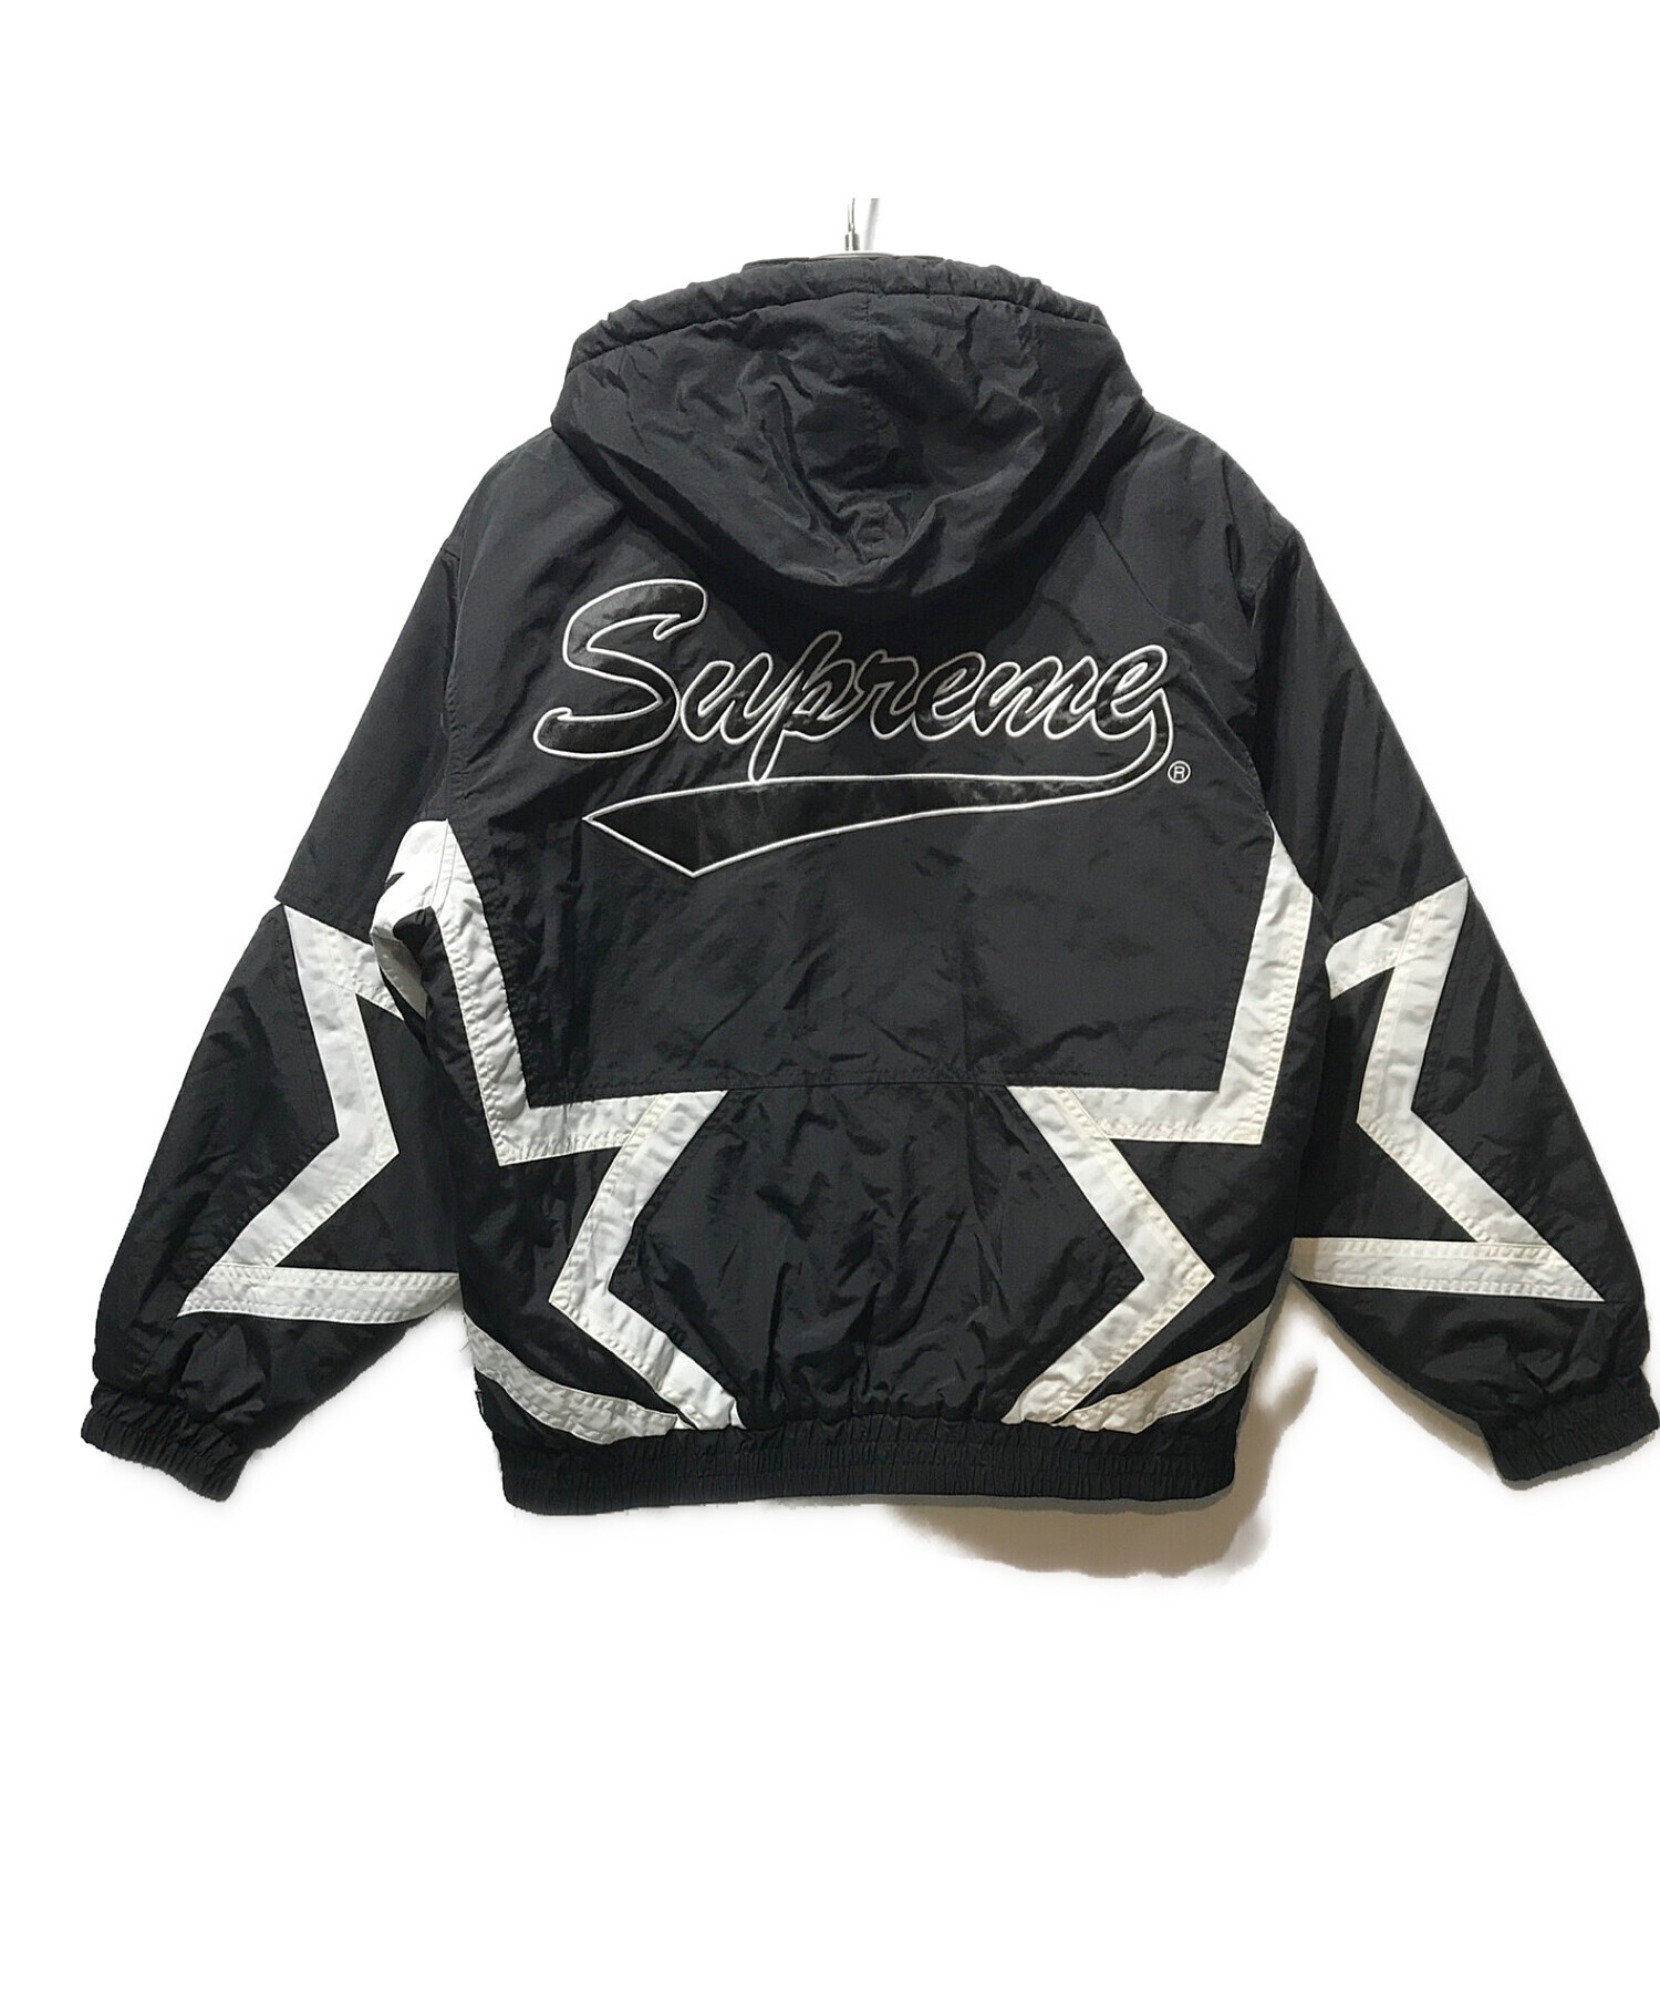 【激安注文】Supreme 19SS Stars Puffy スターパフィー Jacket ジャケット・アウター